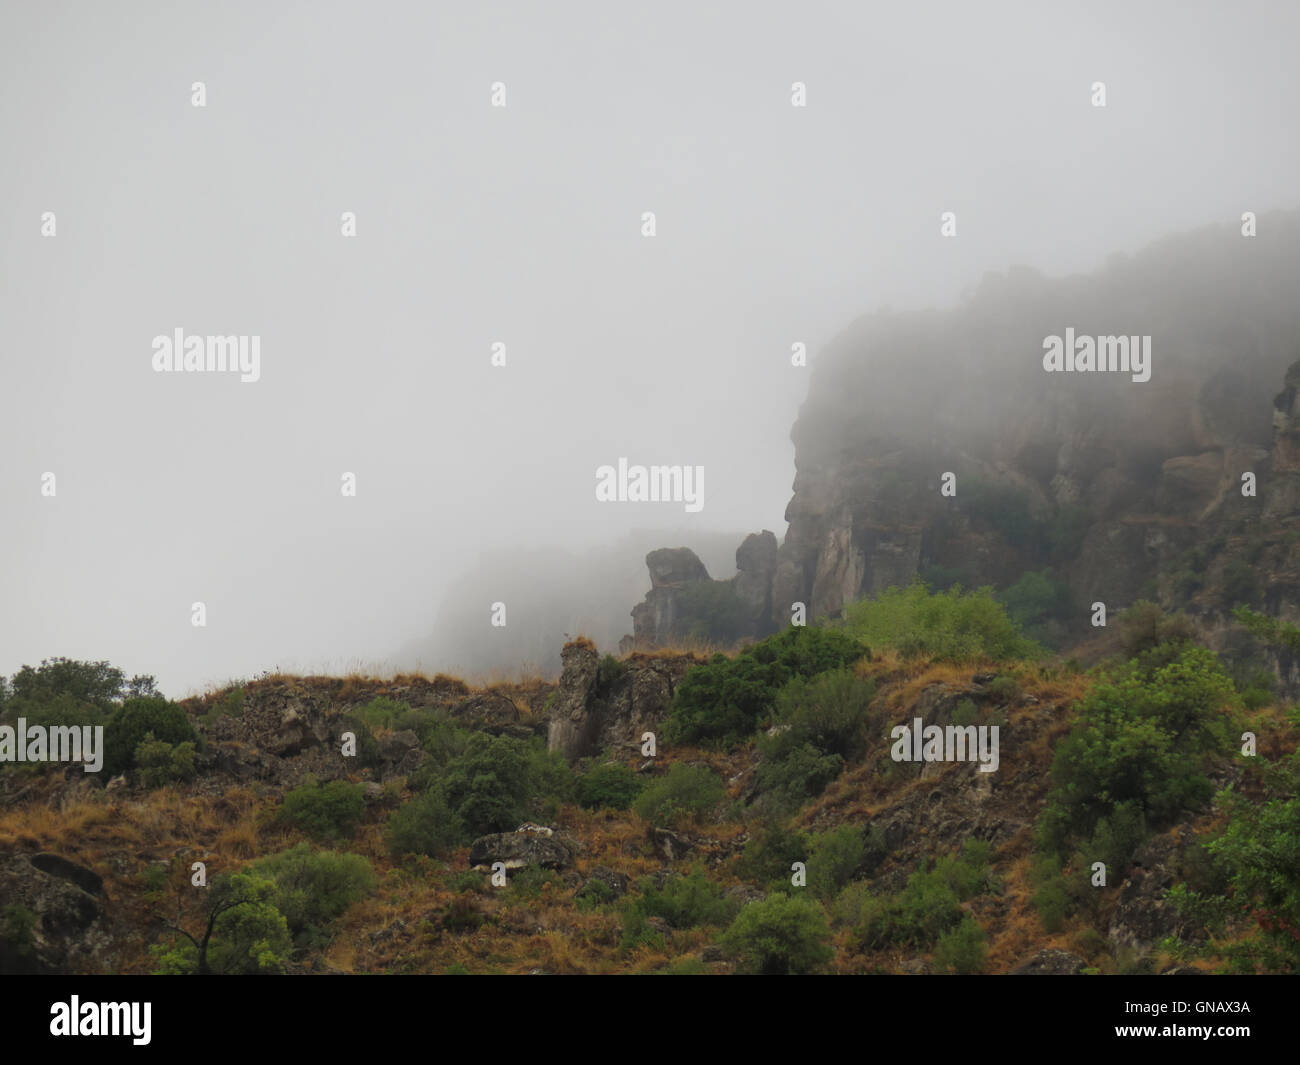 Nebel über einem Feld in den ländlichen Gebieten. Silhouetten der Bäume. Panorama-Aufnahme. Stockfoto